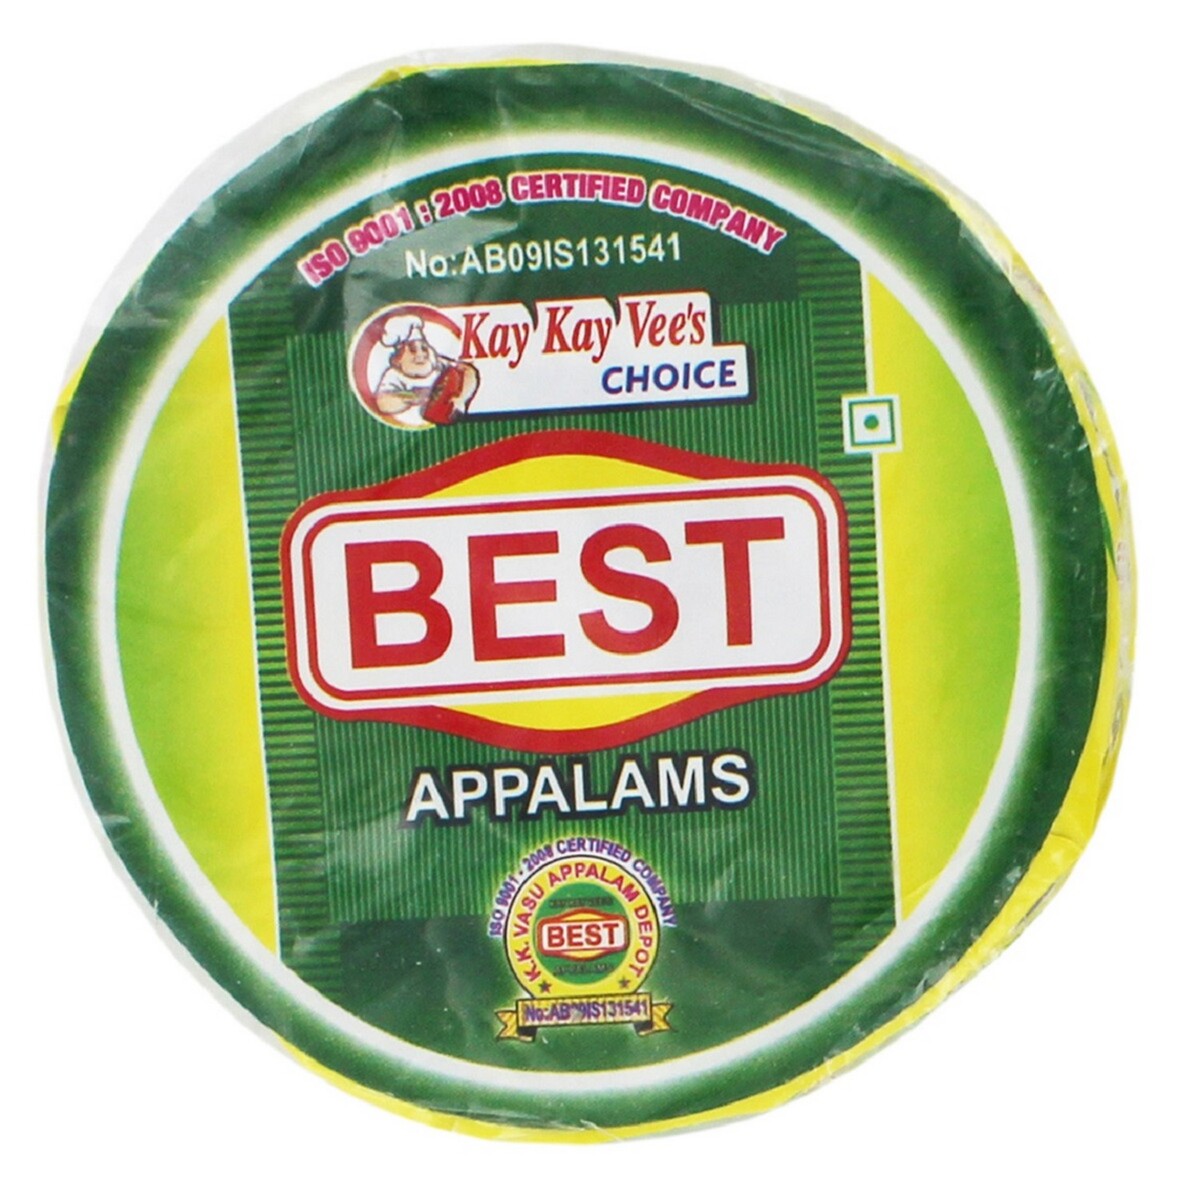 Best Appalam(Pappadam) 100g